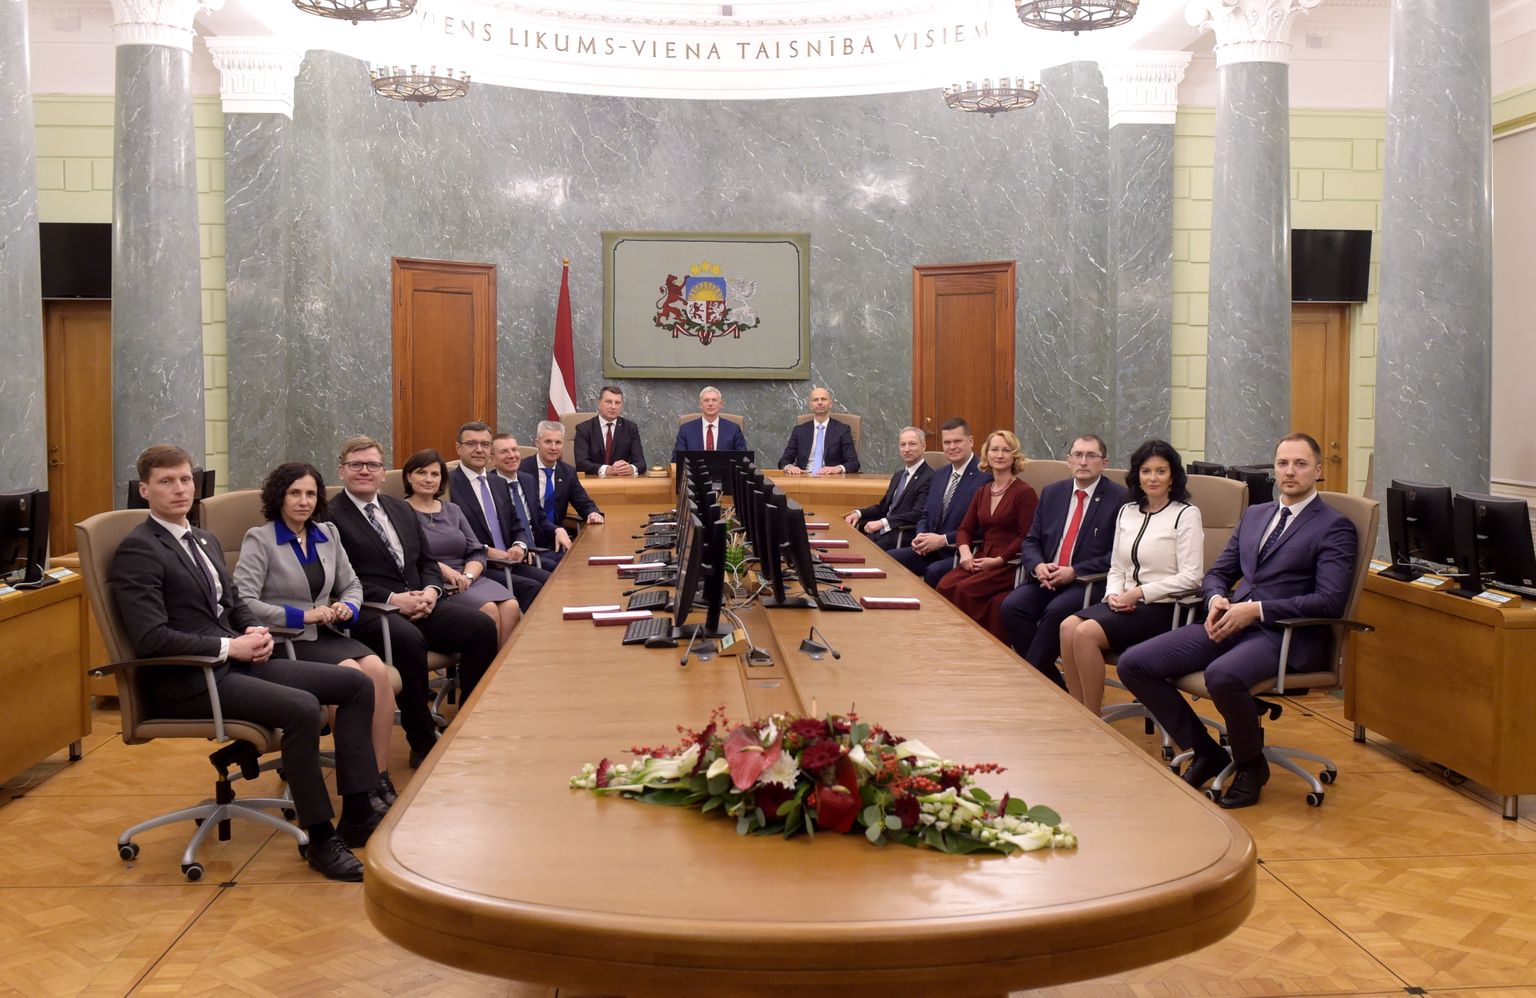 Jaunās valdības kopīgā fotografēšanās pēc Ministru kabineta pirmās svinīgās sēdes Zaļajā zālē.